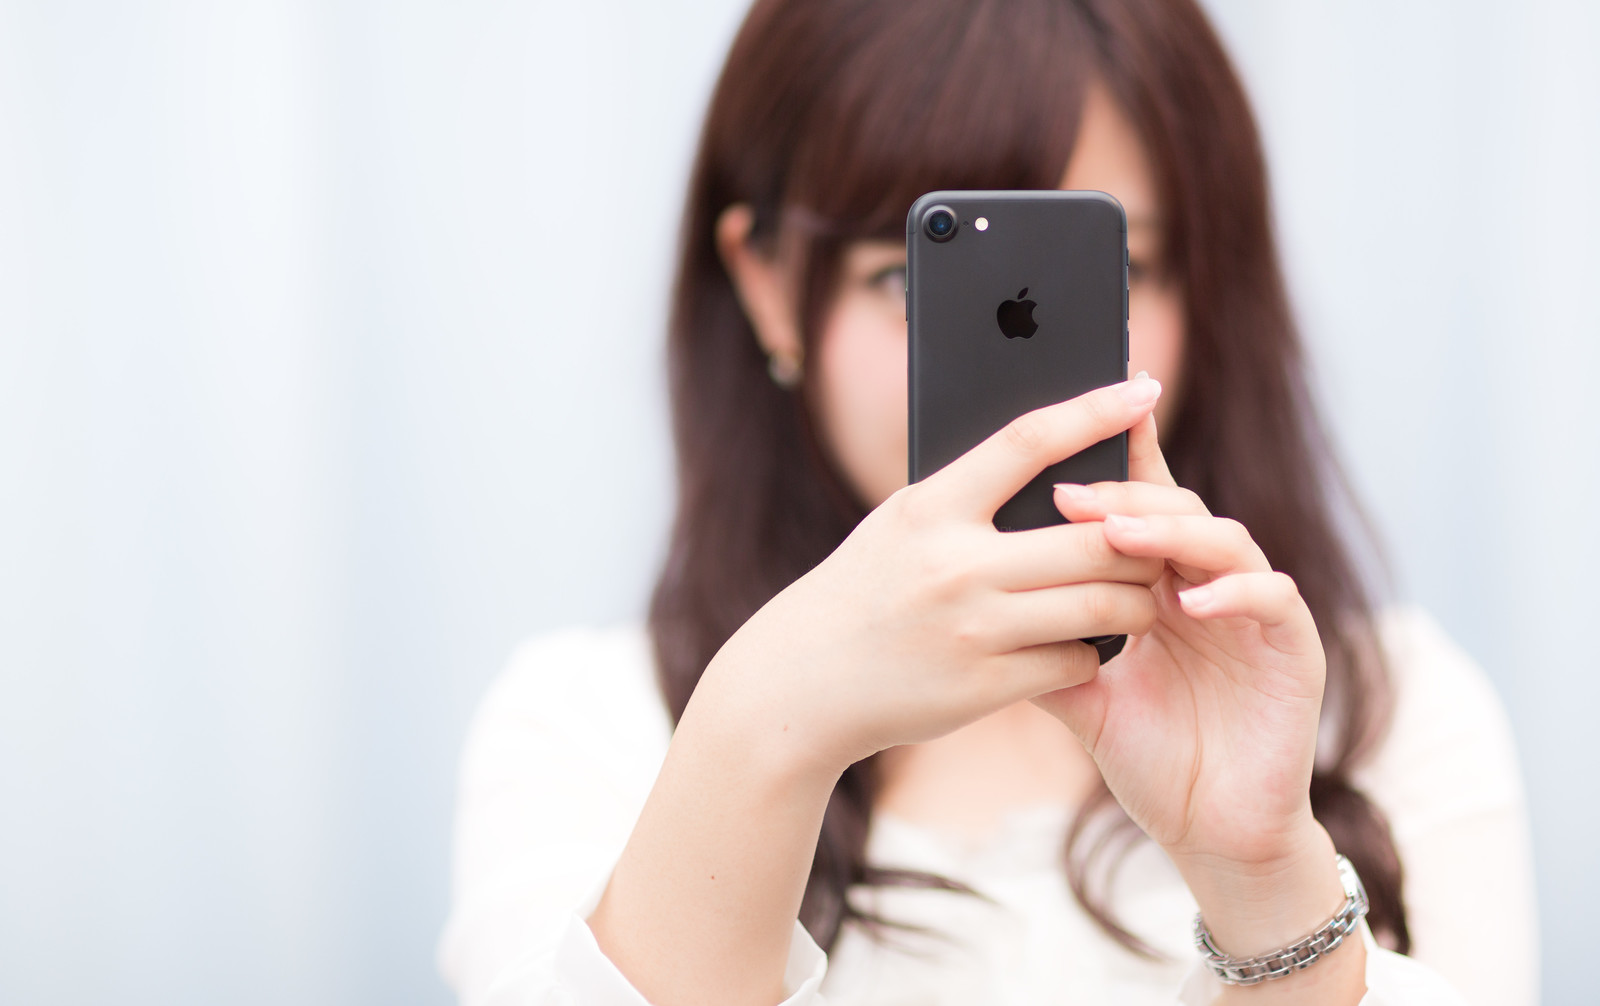 マットブラックカラーのスマートフォンを操作する女性の画像